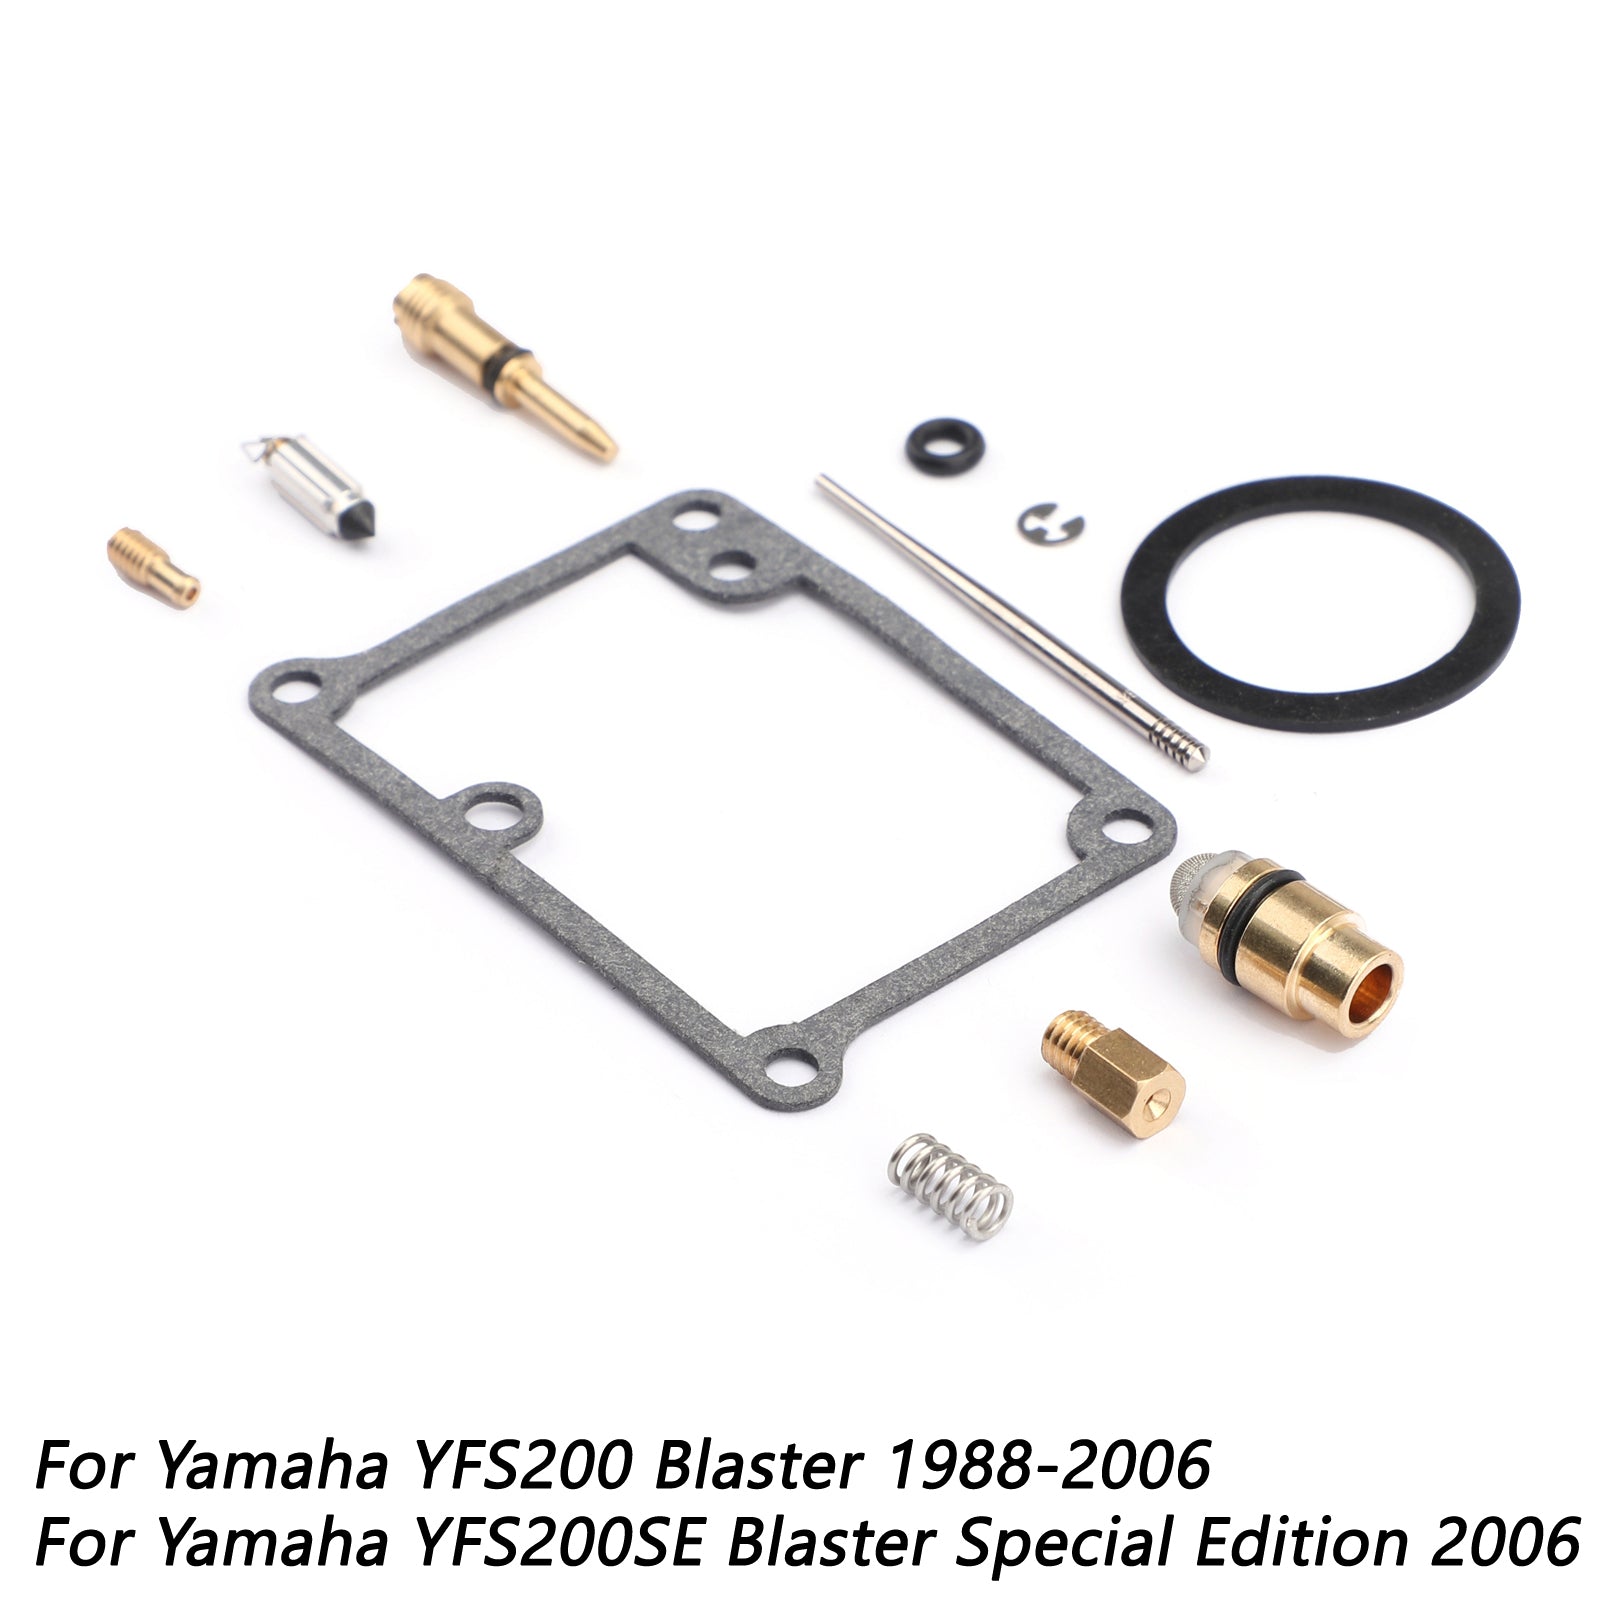 Carburetor CARB Rebuild Repair Kit For Yamaha YFS 200 Blaster 200 YFS200 88-06